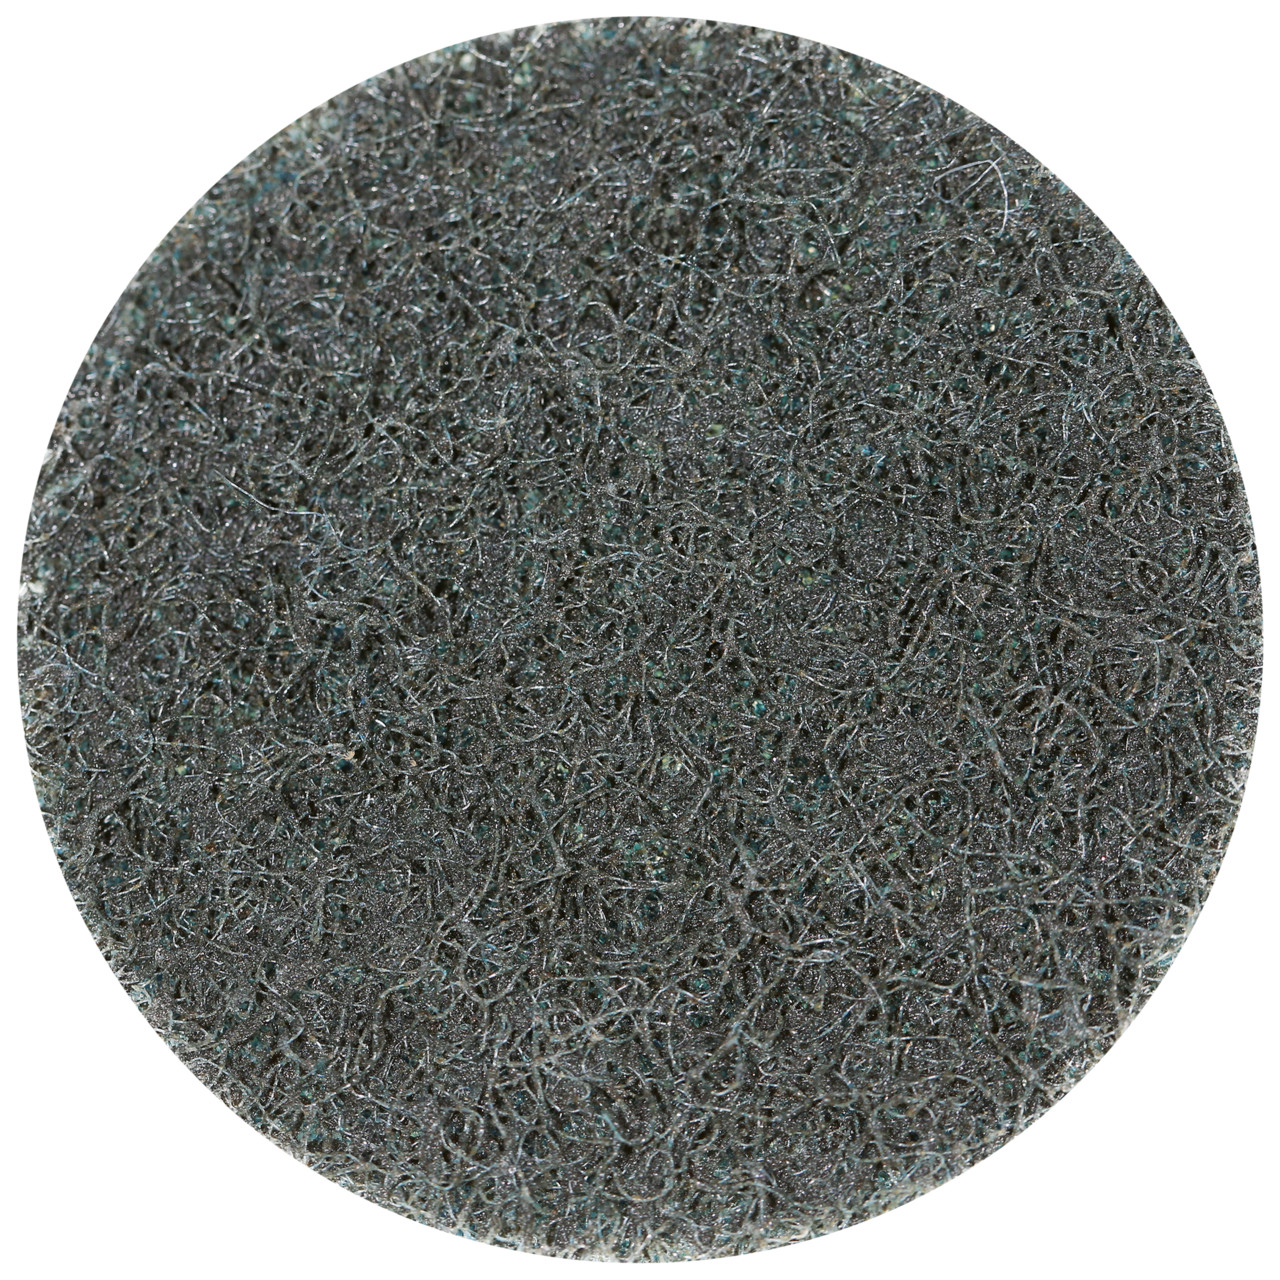 Tyrolit SCM QUICK CHANGE DISC Dimensione 50xS Per acciaio, acciaio inox, metalli non ferrosi, plastica e legno, GROB, forma: QDISC, Art. 112589